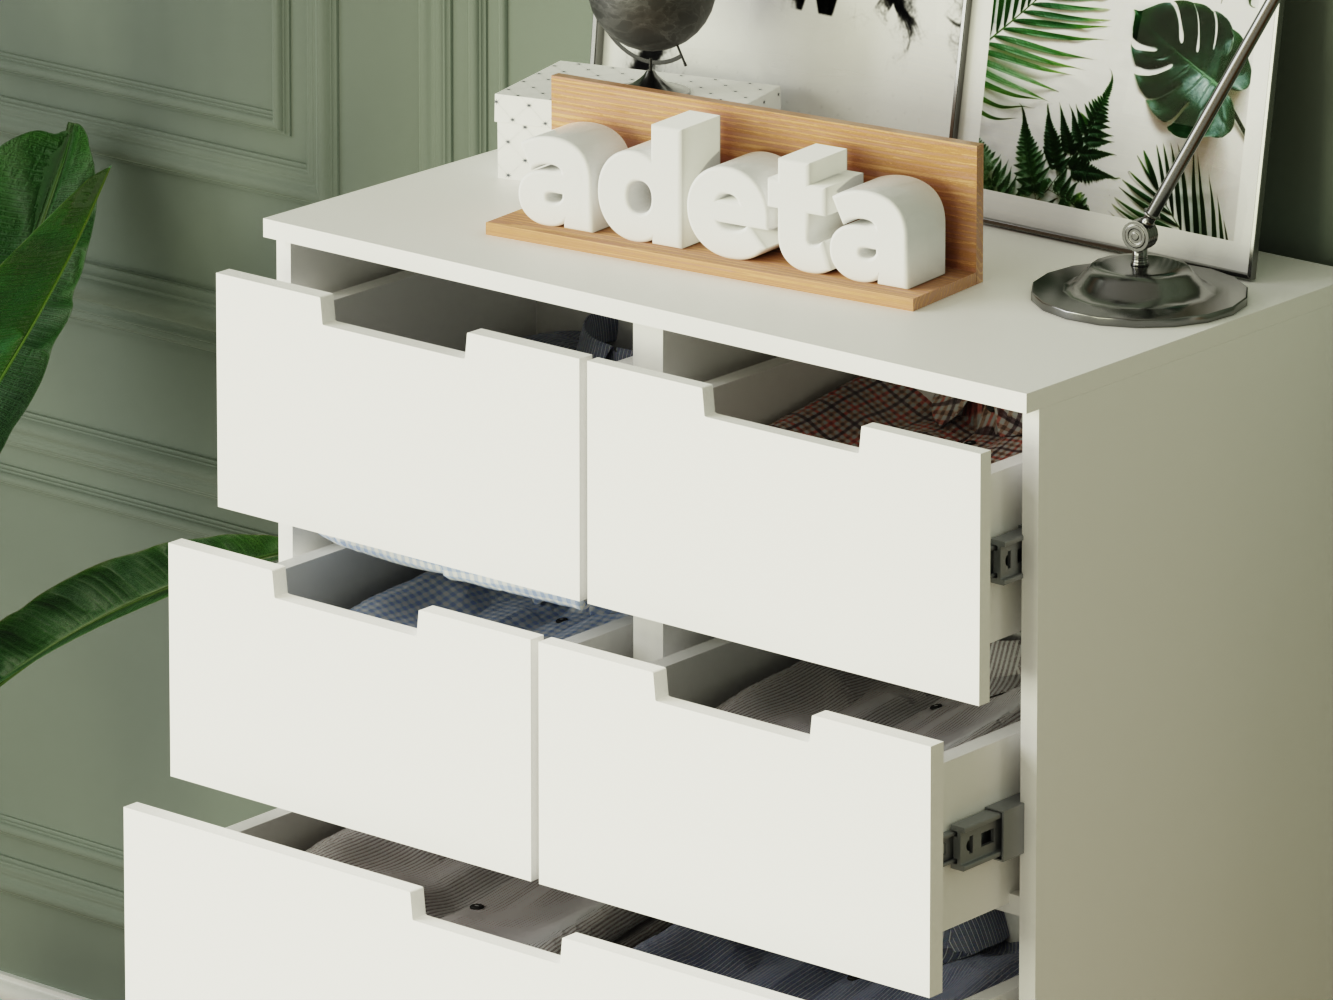  Комод Нордли 15 white ИКЕА (IKEA) изображение товара